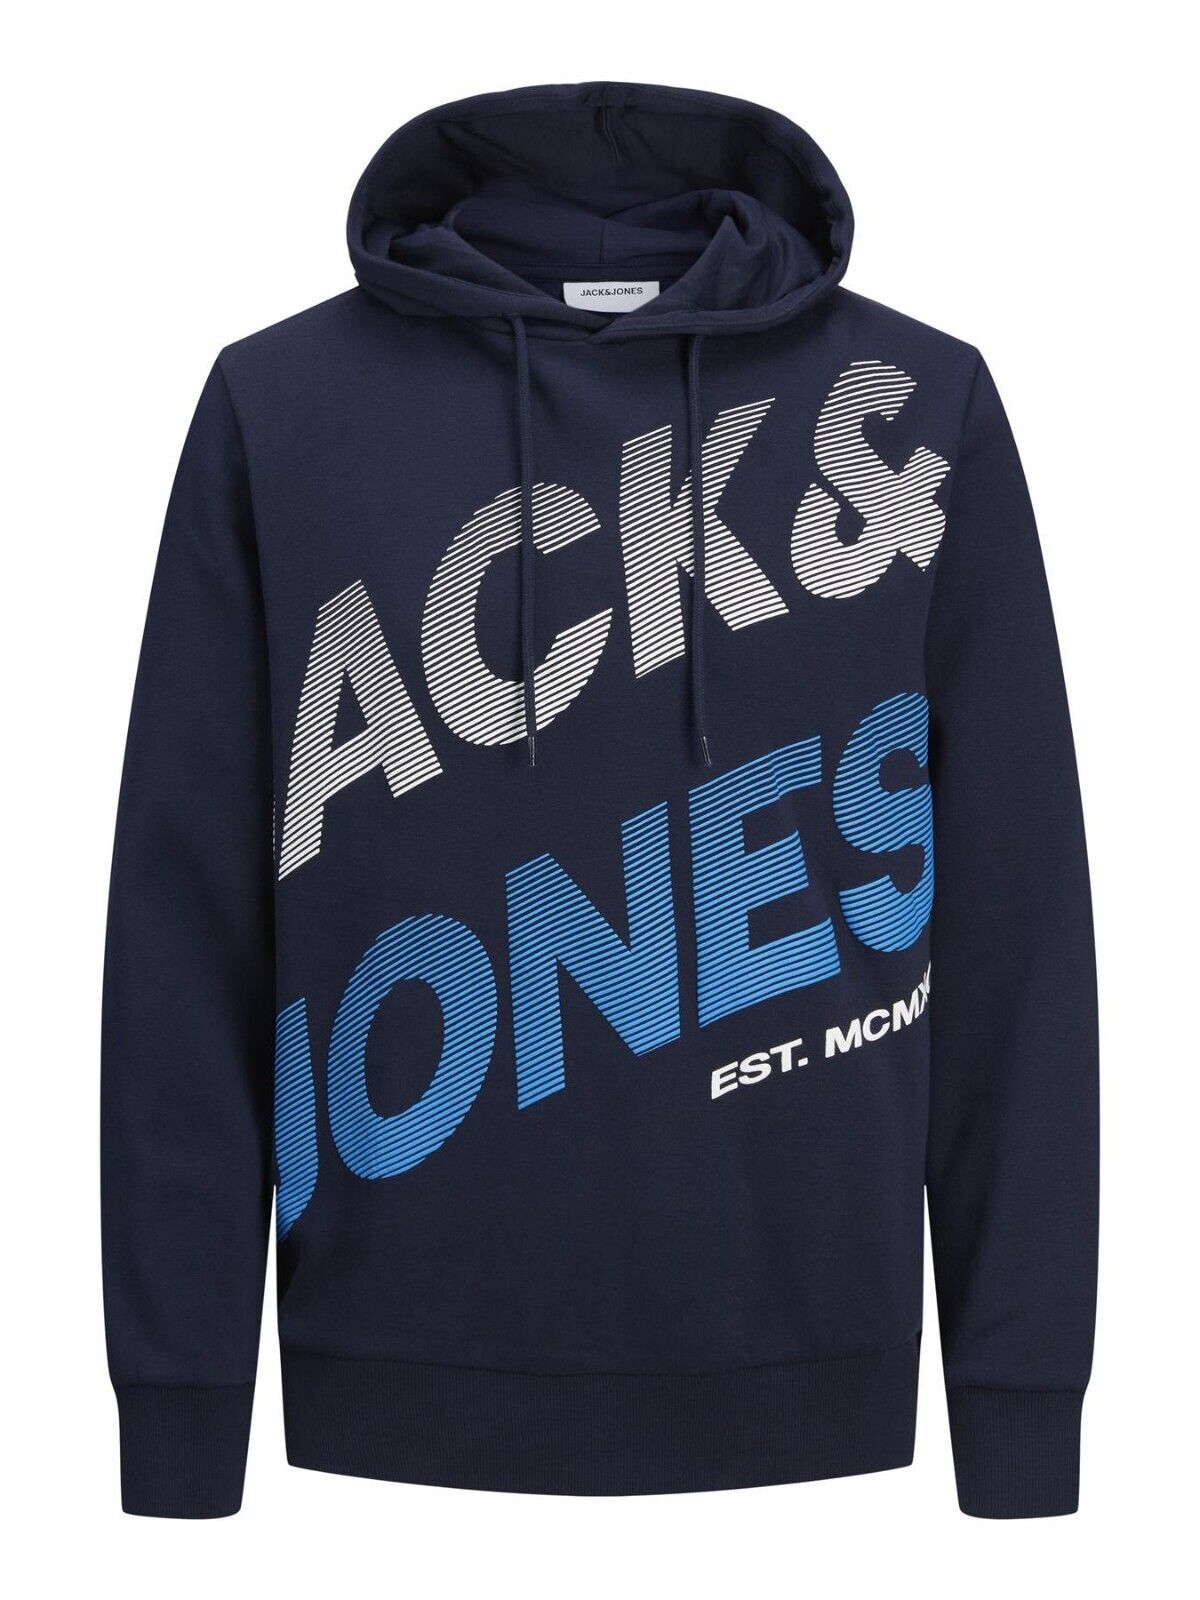 Mens Hoodie Jack & Jones Branded Logo Hooded Sweatshirt Pullover Top XS-3XL